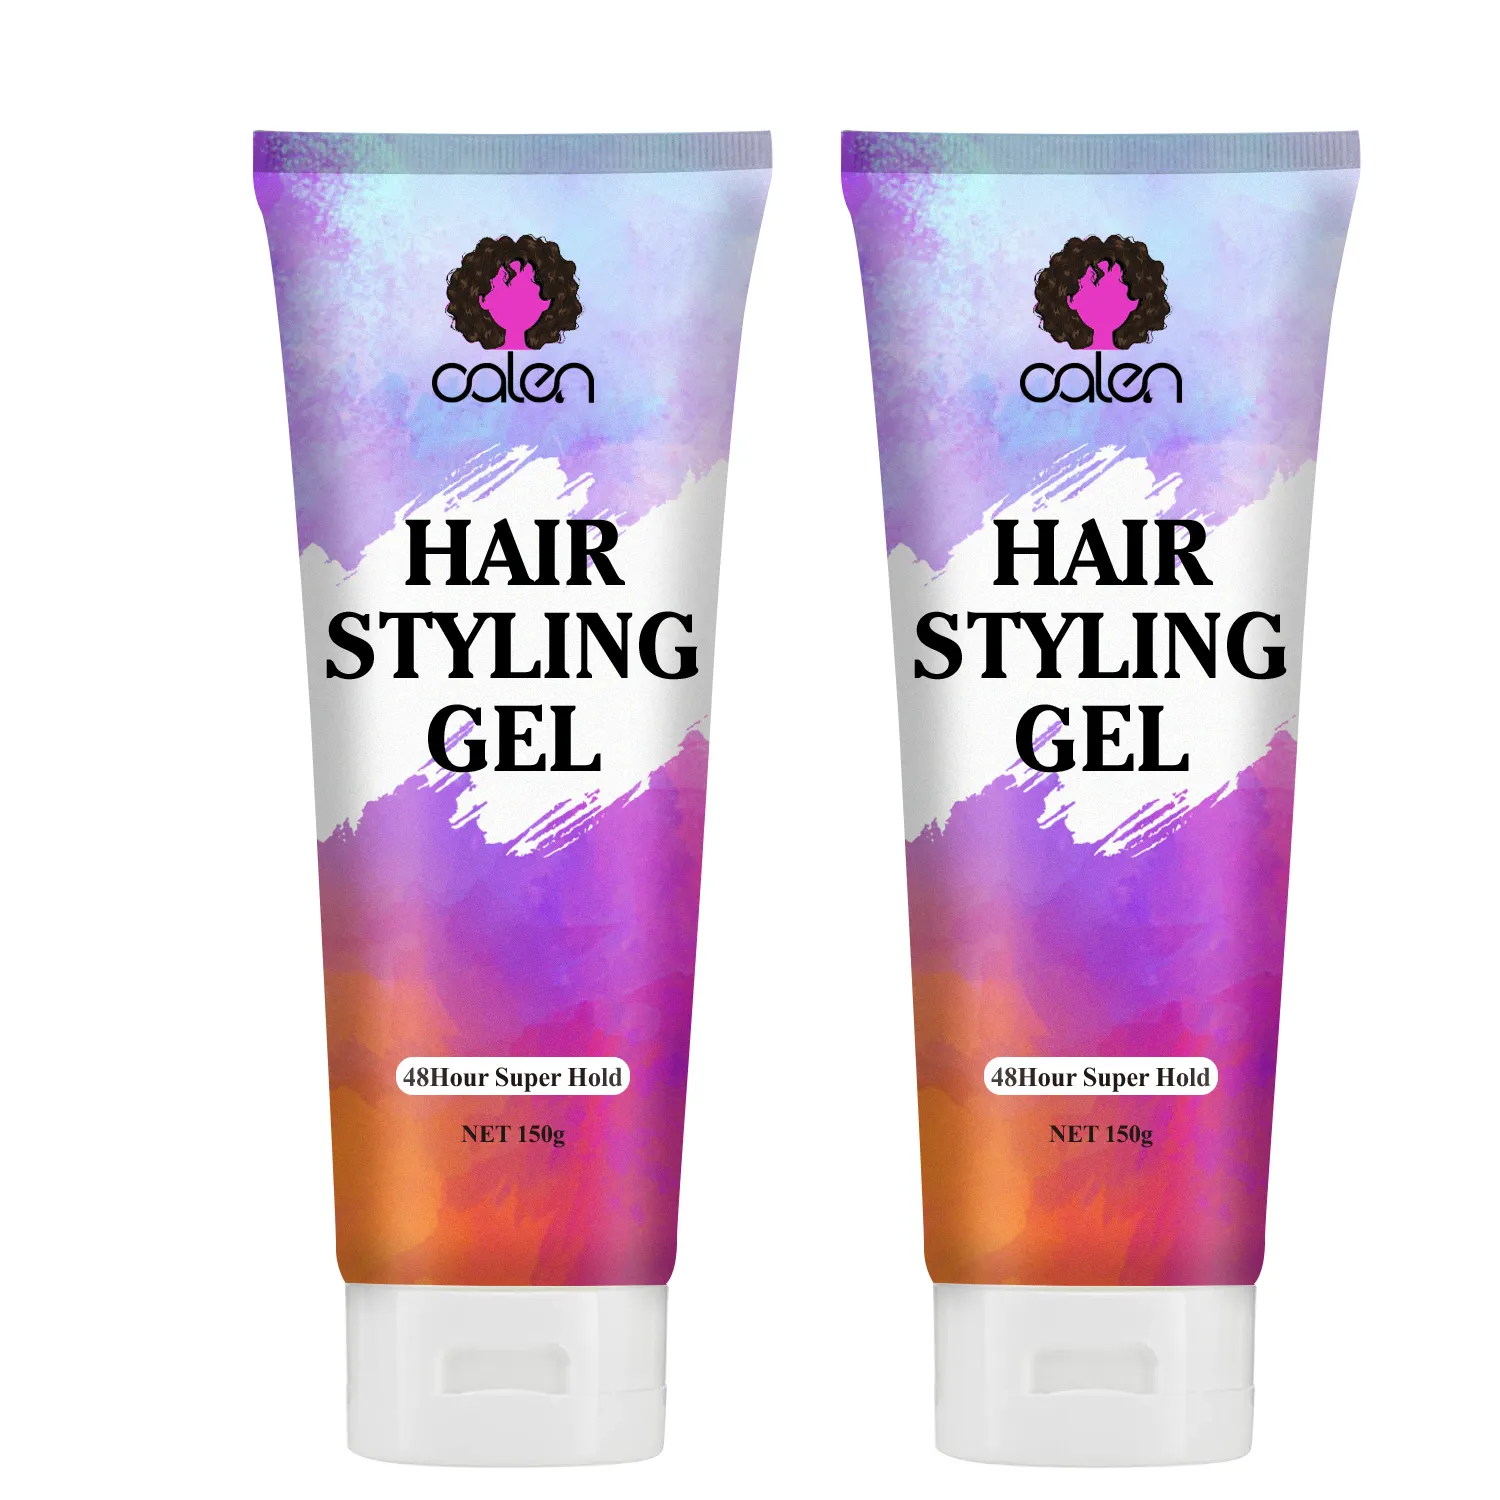 Etiquetado privado, brillo orgánico, molde refinado, sujeción firme, Gel de peinado para el cabello para mujeres y hombres